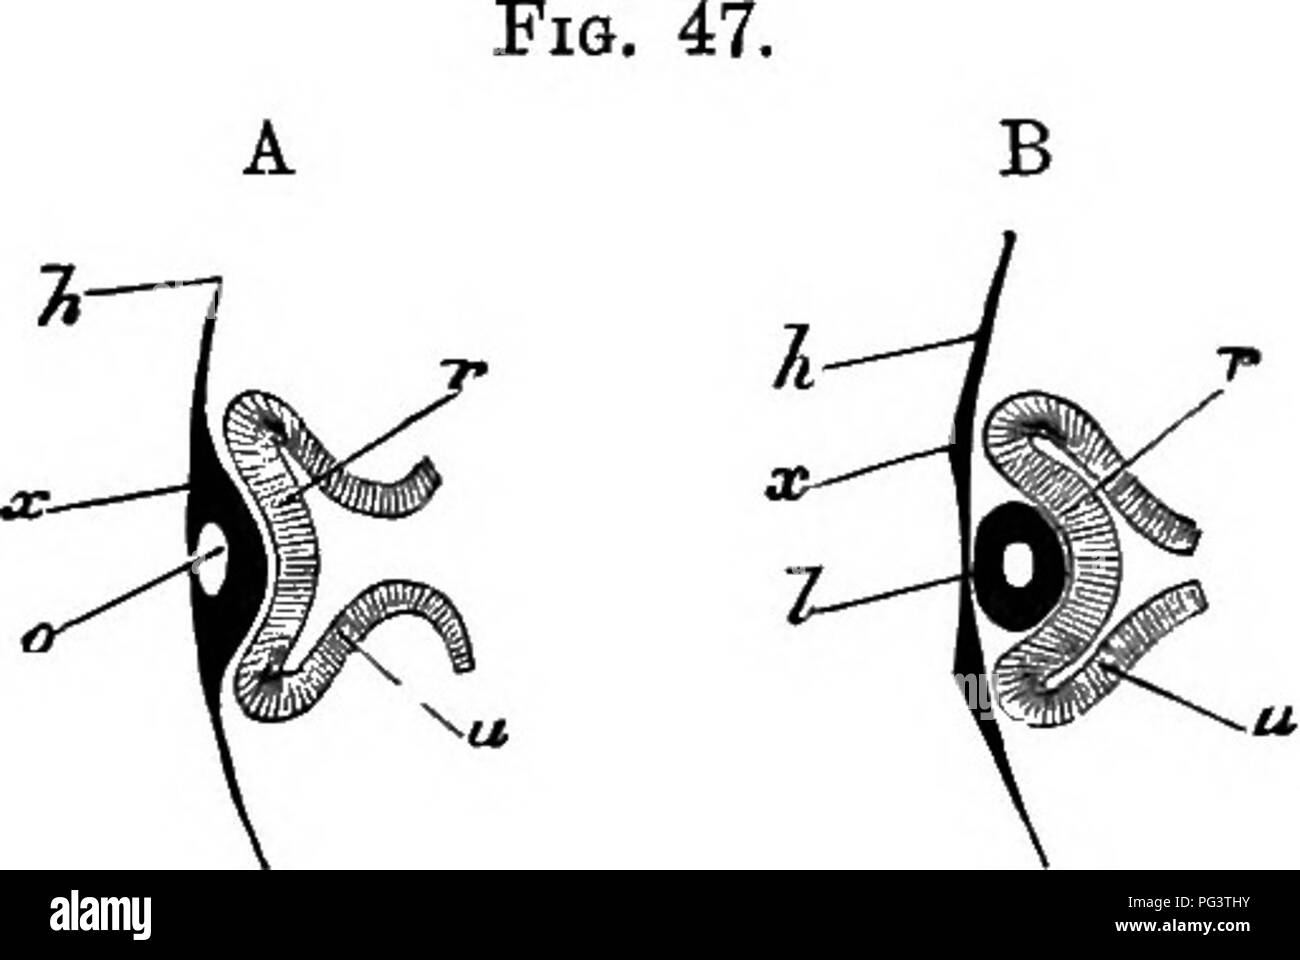 . Les éléments d'embryologie . L'embryologie. VI.] L'ŒIL. 135. Sections schématique illustrant la formation op l'Œil. (Après l'Eemak.) en A, l'épiblaste superficielle tMn est perçu comme un épaissie à x, en face de la vésicule optique et son involution, de manière à former une fosse 0, l'embouchure de ce qui a déjà commencé à fermer. En raison de cette involution, qui forme le rudiment de la lentille, la vésicule optique est doublé, sa partie avant r projetés contre la partie arrière u, et l'original de la cavité ainsi des vésicules de taille réduite. La manette de la vésicule est montré comme stiU. large. En 5, e Banque D'Images